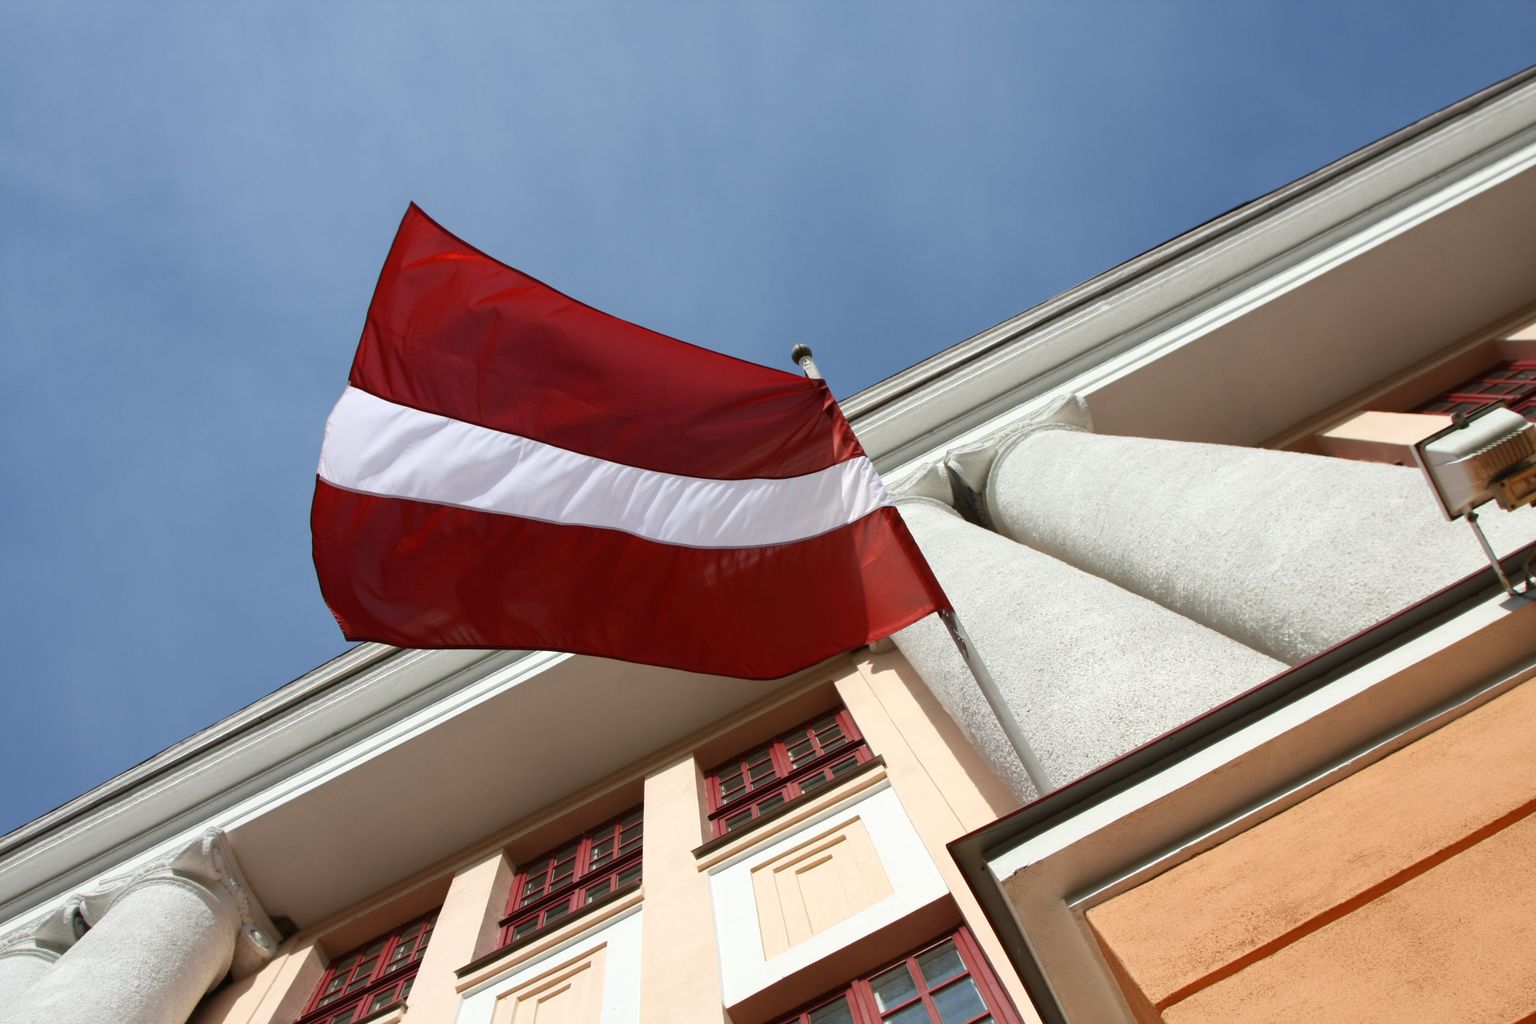 Lätis on homme iseseisvuse taastamise päev. Sel puhul heisatakse ka riigilipud.